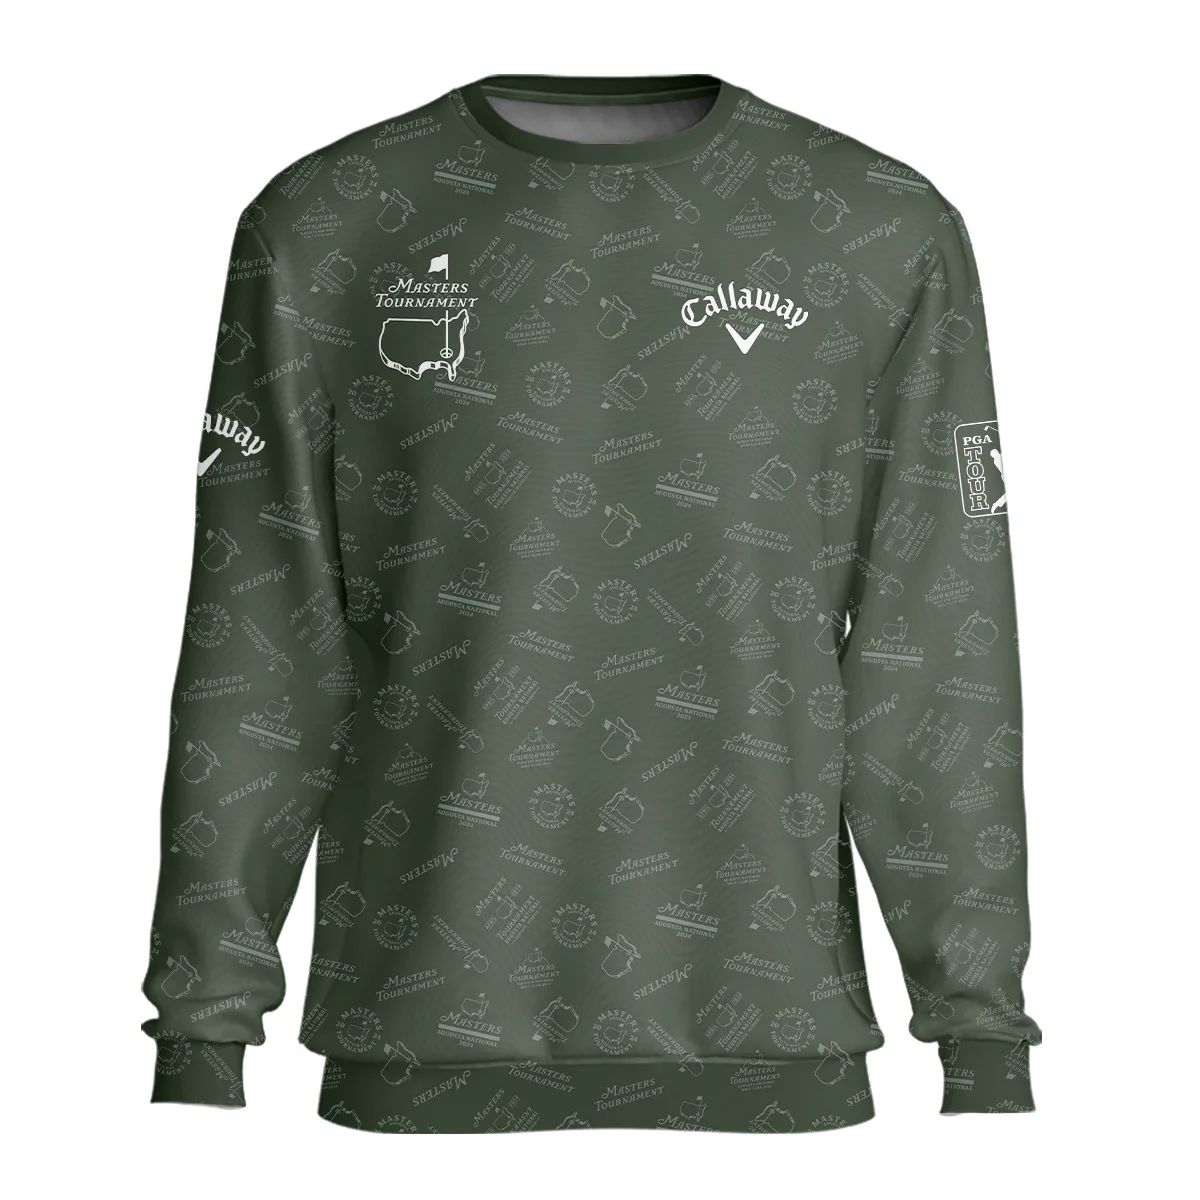 2024 Golf Pattern Masters Tournament Callaway Zipper Hoodie Shirt Dark Green Pattern All Over Print Zipper Hoodie Shirt